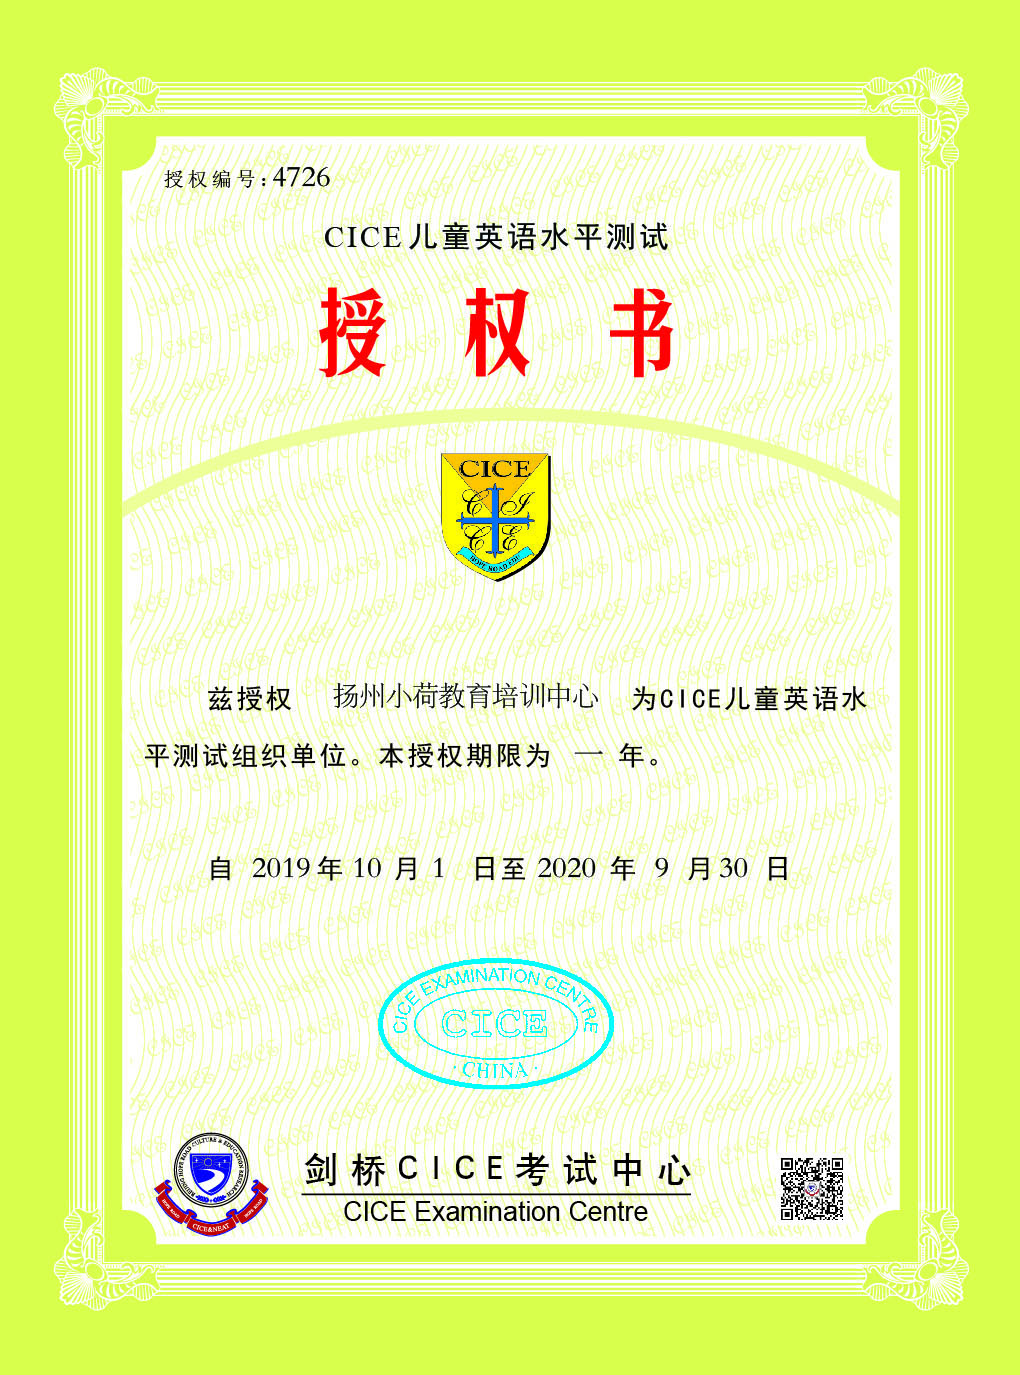 扬州小荷教育培训中心被授予剑桥CICE英语邗江区考点